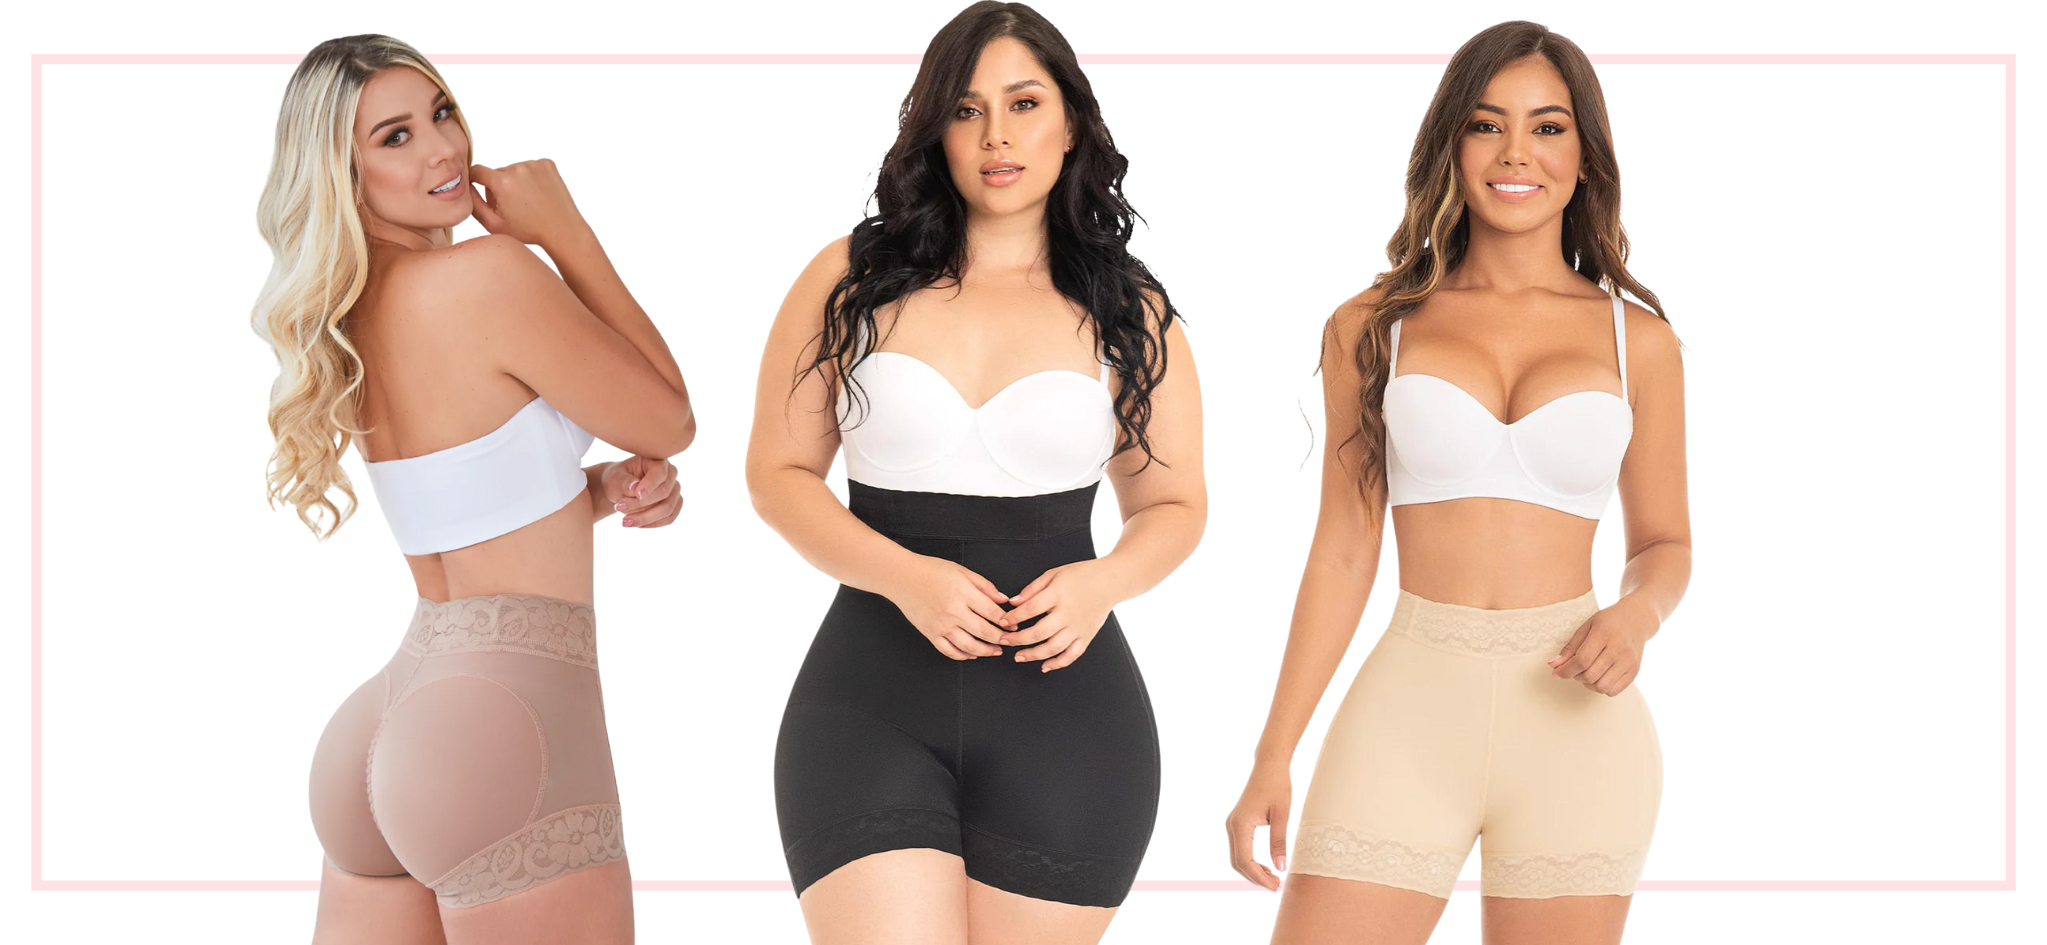 Miss curvas fajas colombianas DTLA we carry plus sizes #fajasenlosange